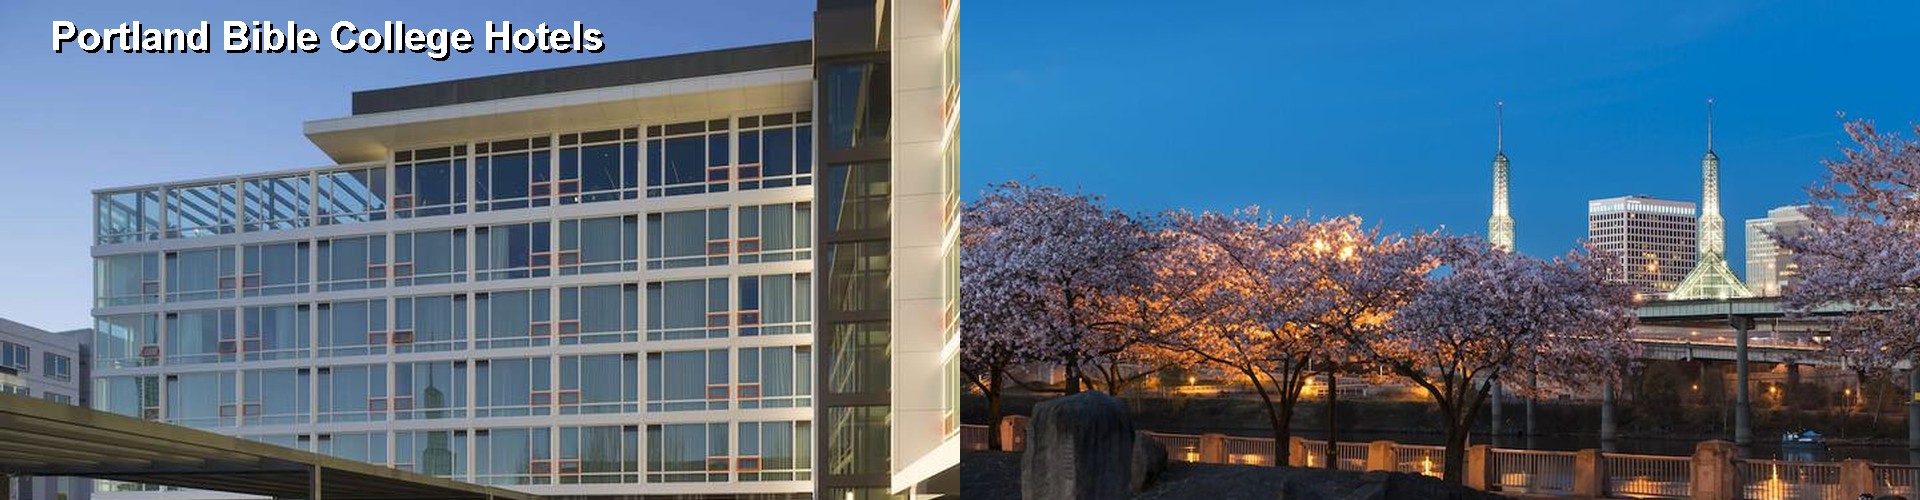 2 Best Hotels near Portland Bible College